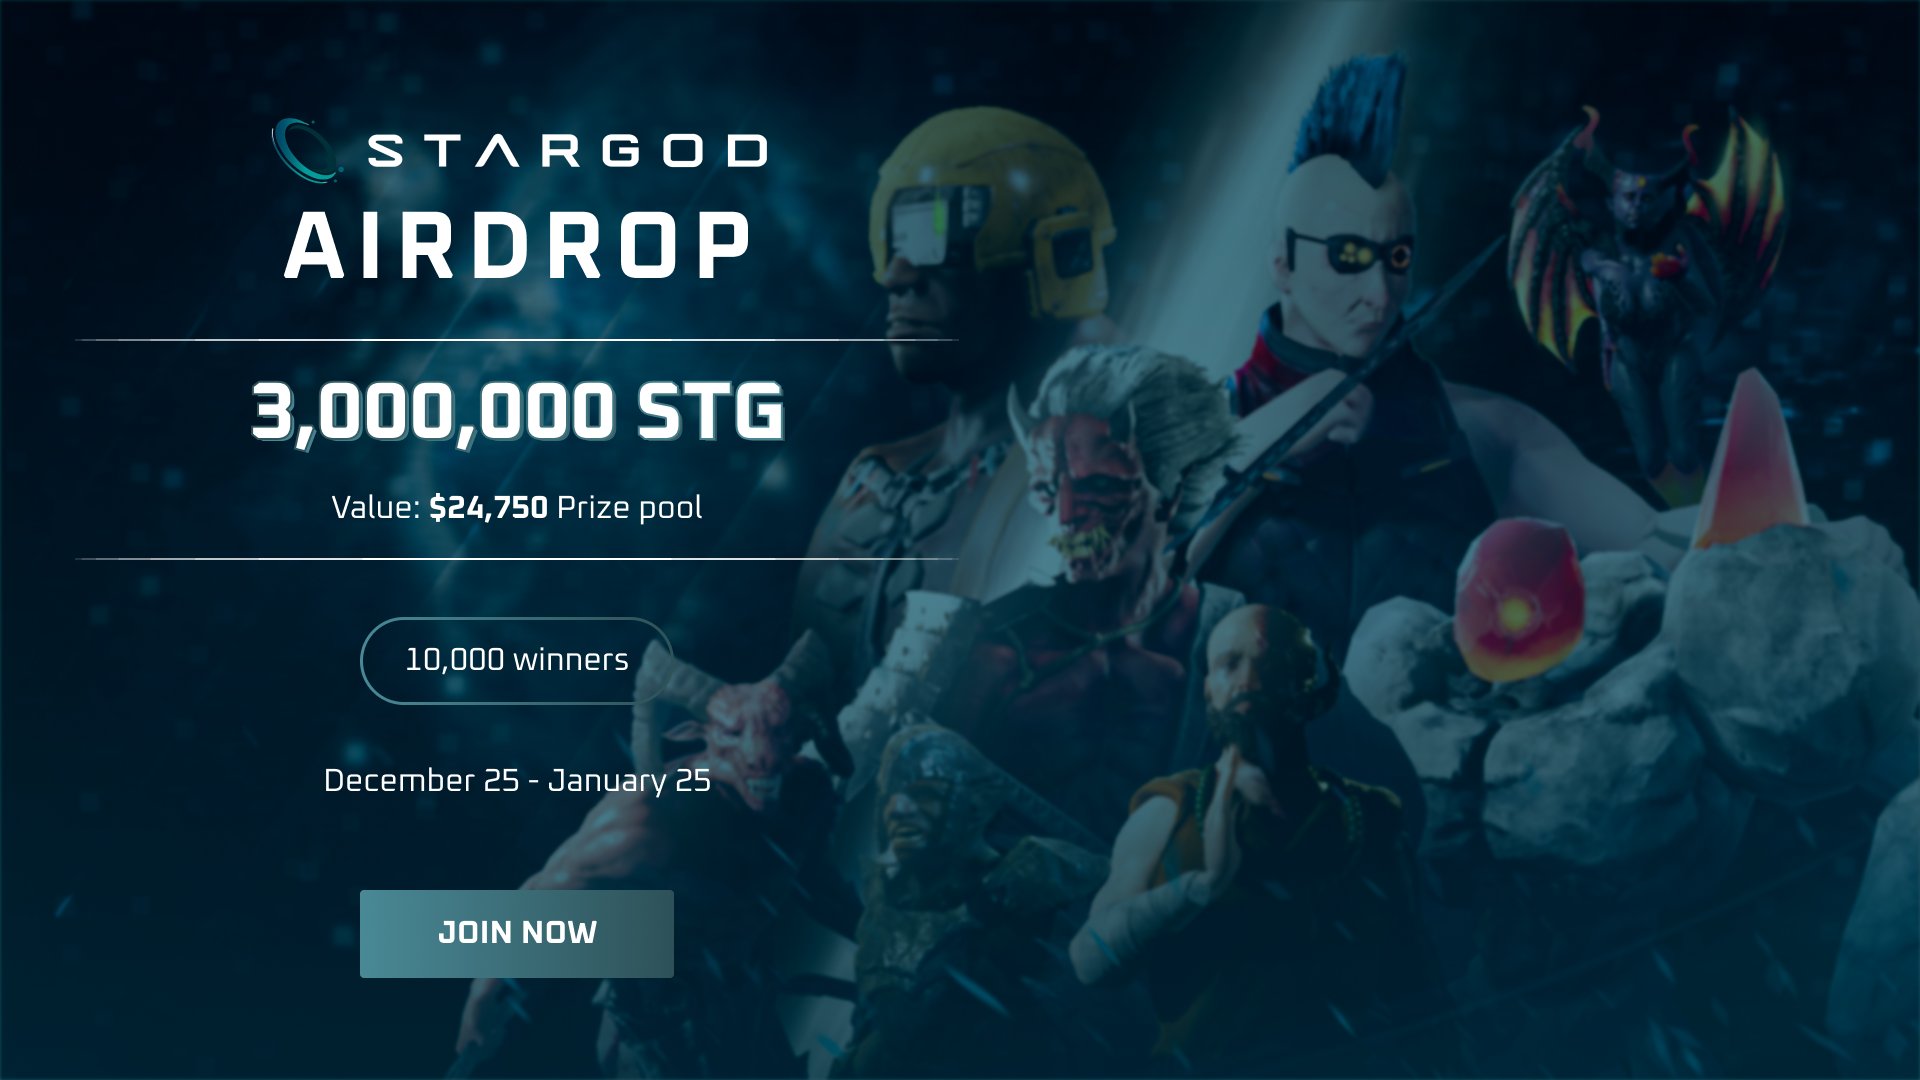 Bạn muốn nhận được giải thưởng lên tới $24.750 và trở thành một trong những người đầu tiên trải nghiệm Airdrop của StarGod? Hãy xem hình ảnh liên quan đến Star God trên Twitter và tìm hiểu thêm chi tiết về sự kiện hấp dẫn này. Đừng bỏ lỡ cơ hội tuyệt vời này, hãy tham gia ngay!